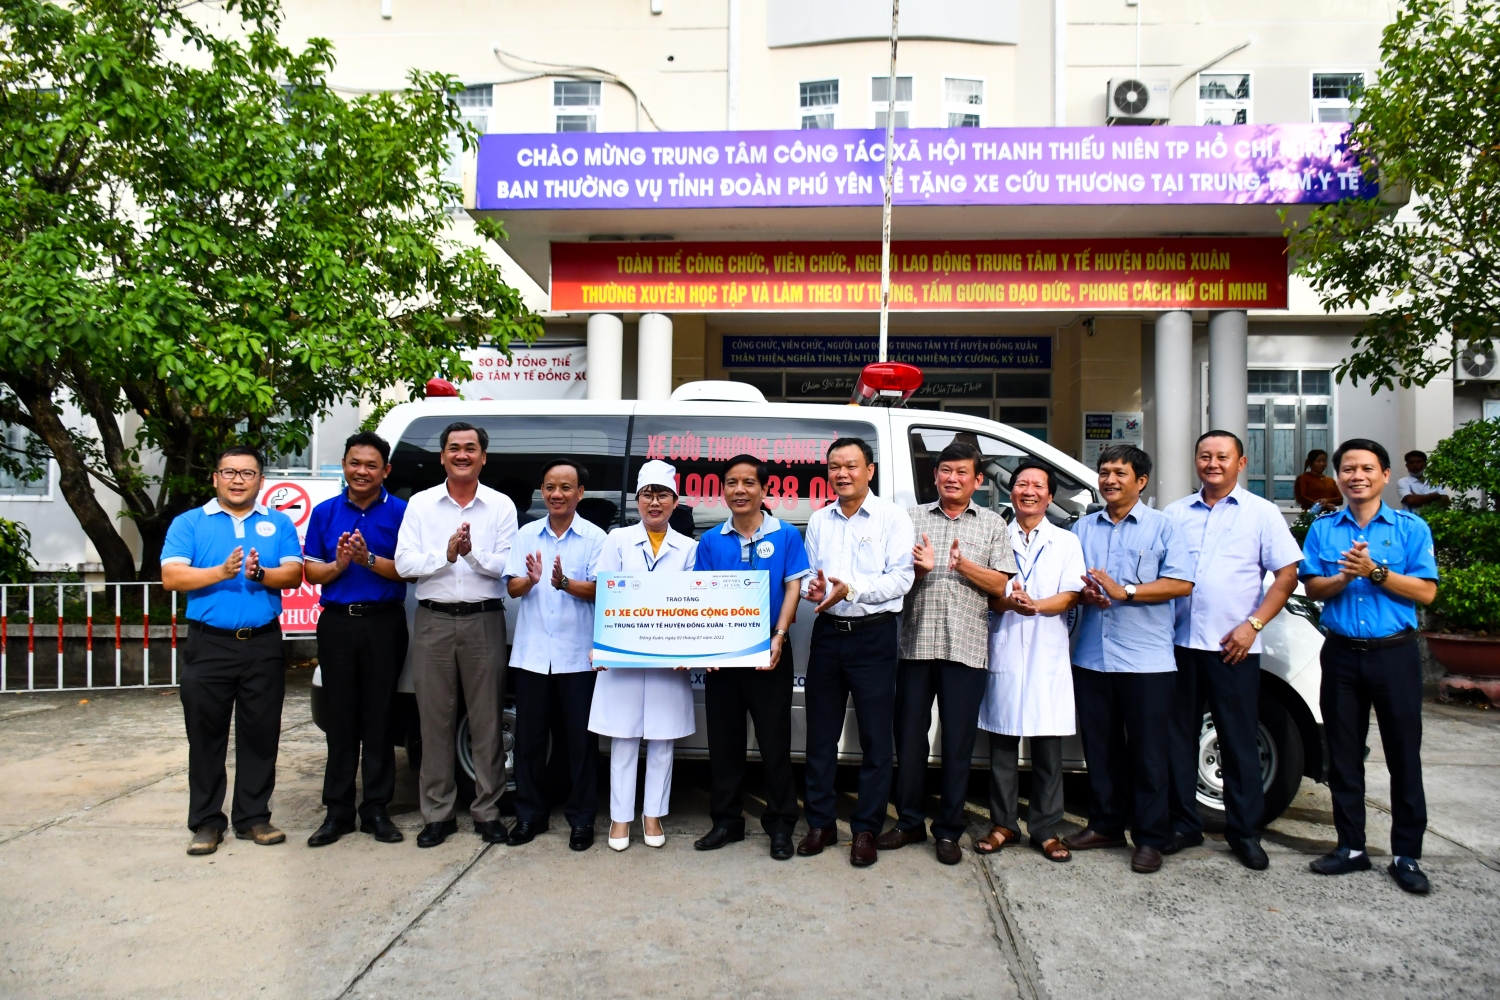 Phó Chủ tịch UBND tỉnh Đào Mỹ (thứ năm từ phải sang) cùng lãnh đạo các sở, ngành, huyện Tuy An và các đơn vị trao tặng xe cứu thương cho Trung tâm Y tế huyện Đồng Xuân.